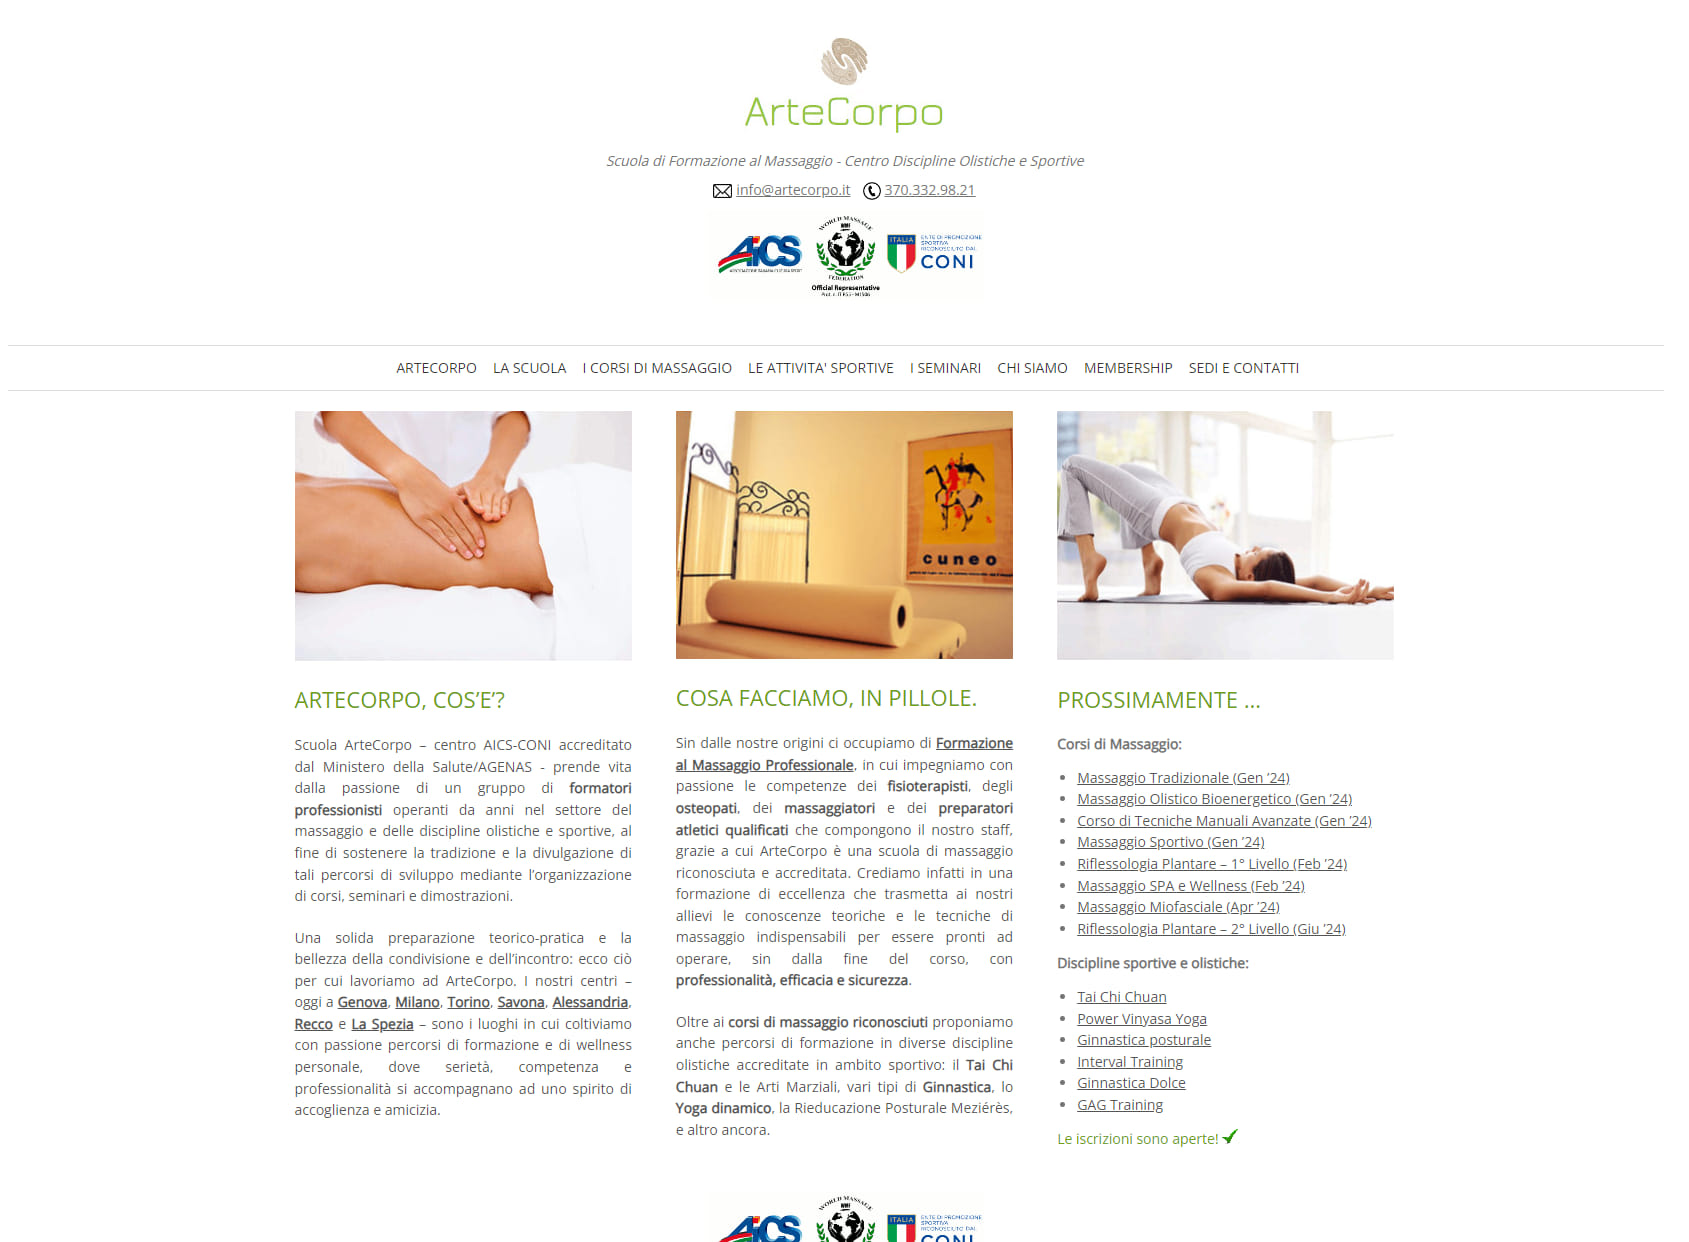 Scuola di Massaggio ArteCorpo - Corsi di Massaggio a Alessandria